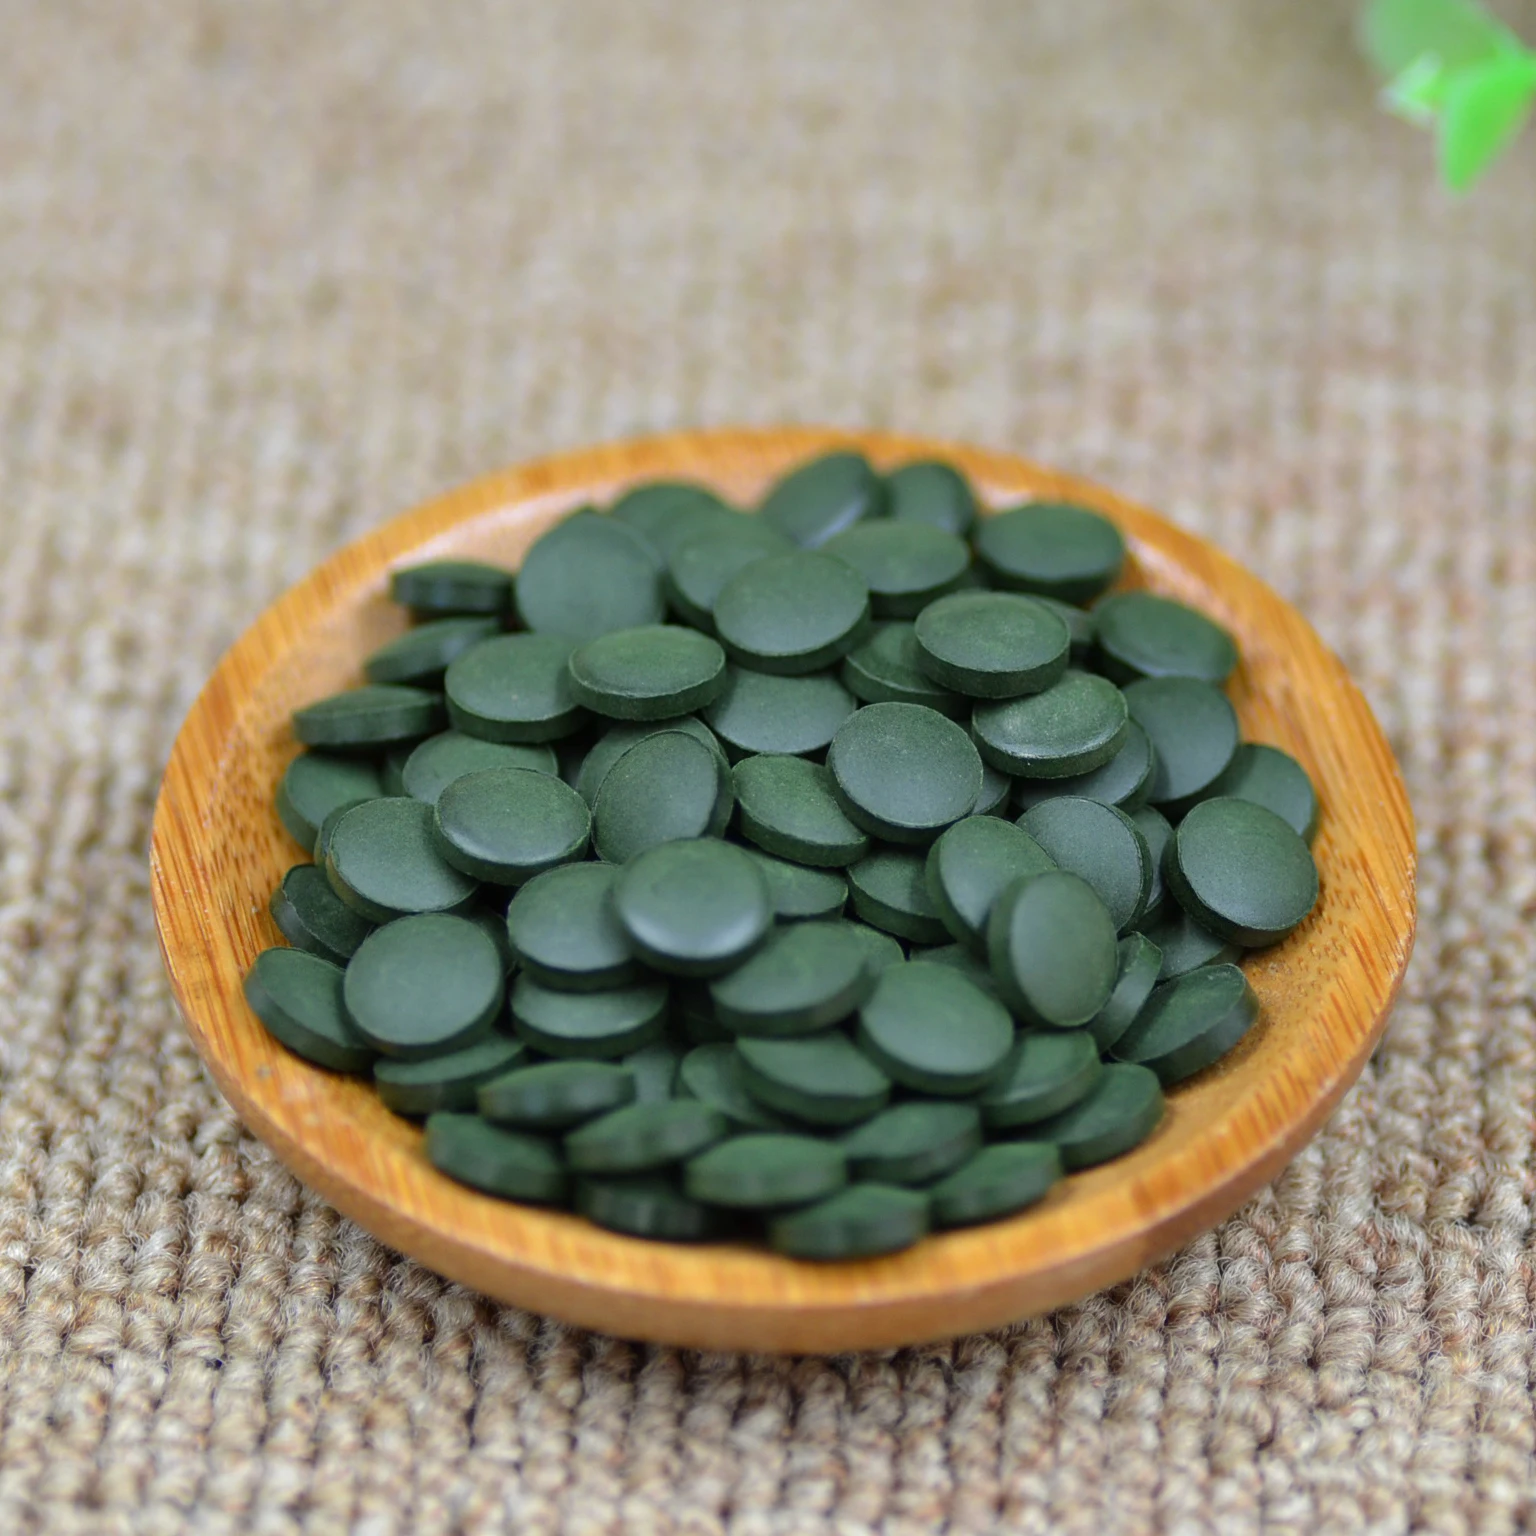 

100% китайская Юньнань зеленая Органическая Спирулина натуральные таблетки Анти-усталость повышает иммунитет тонкий Спирулина таблетки